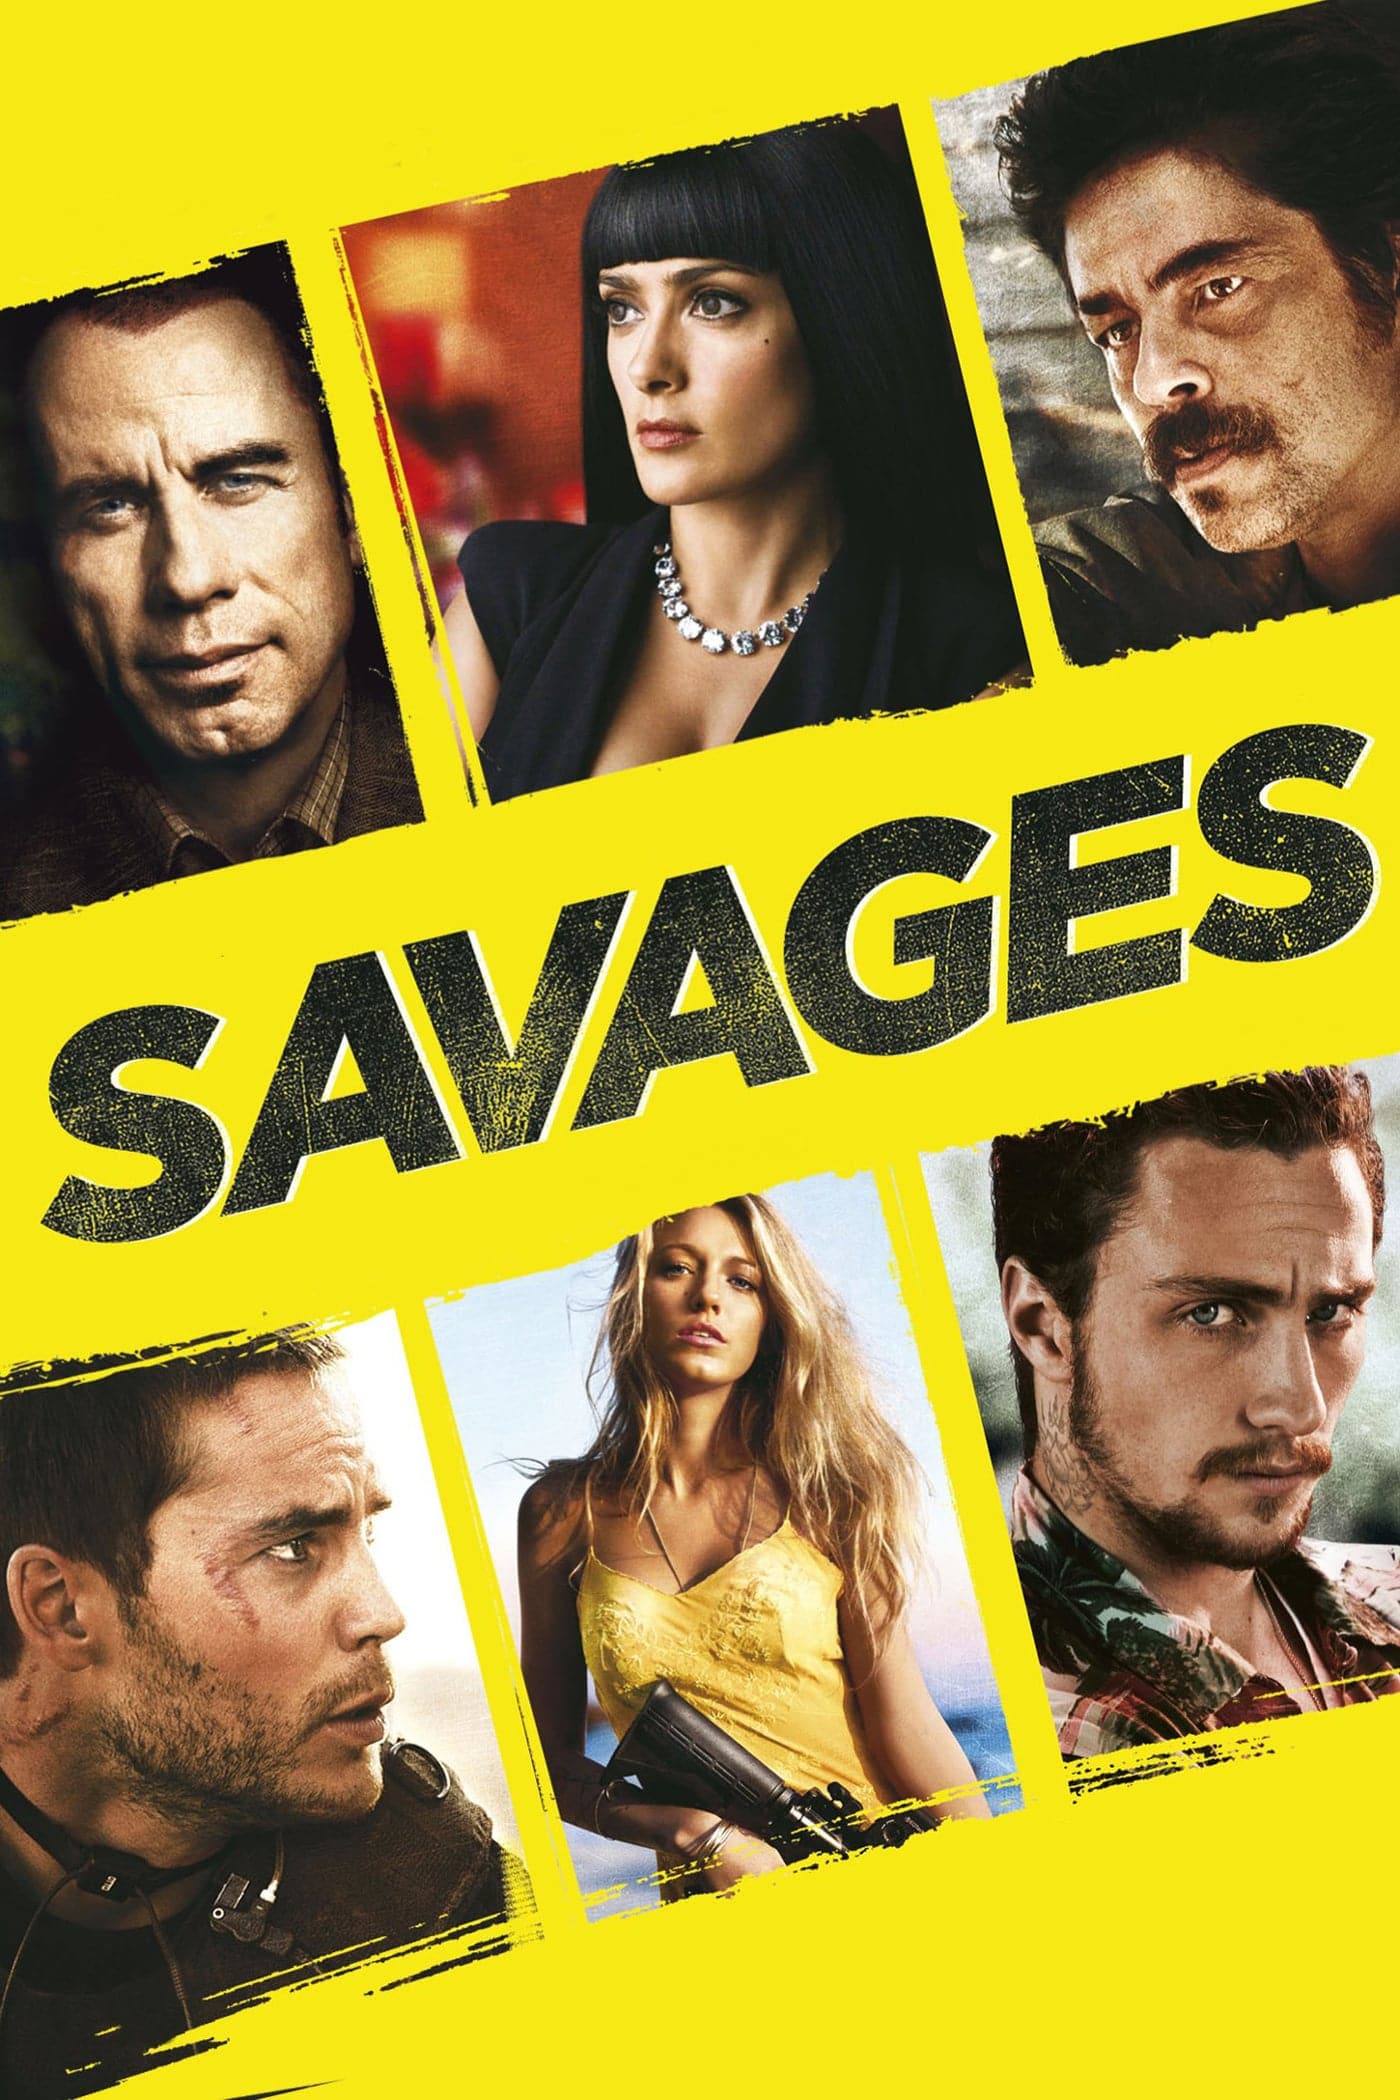 Plakat von "Savages"